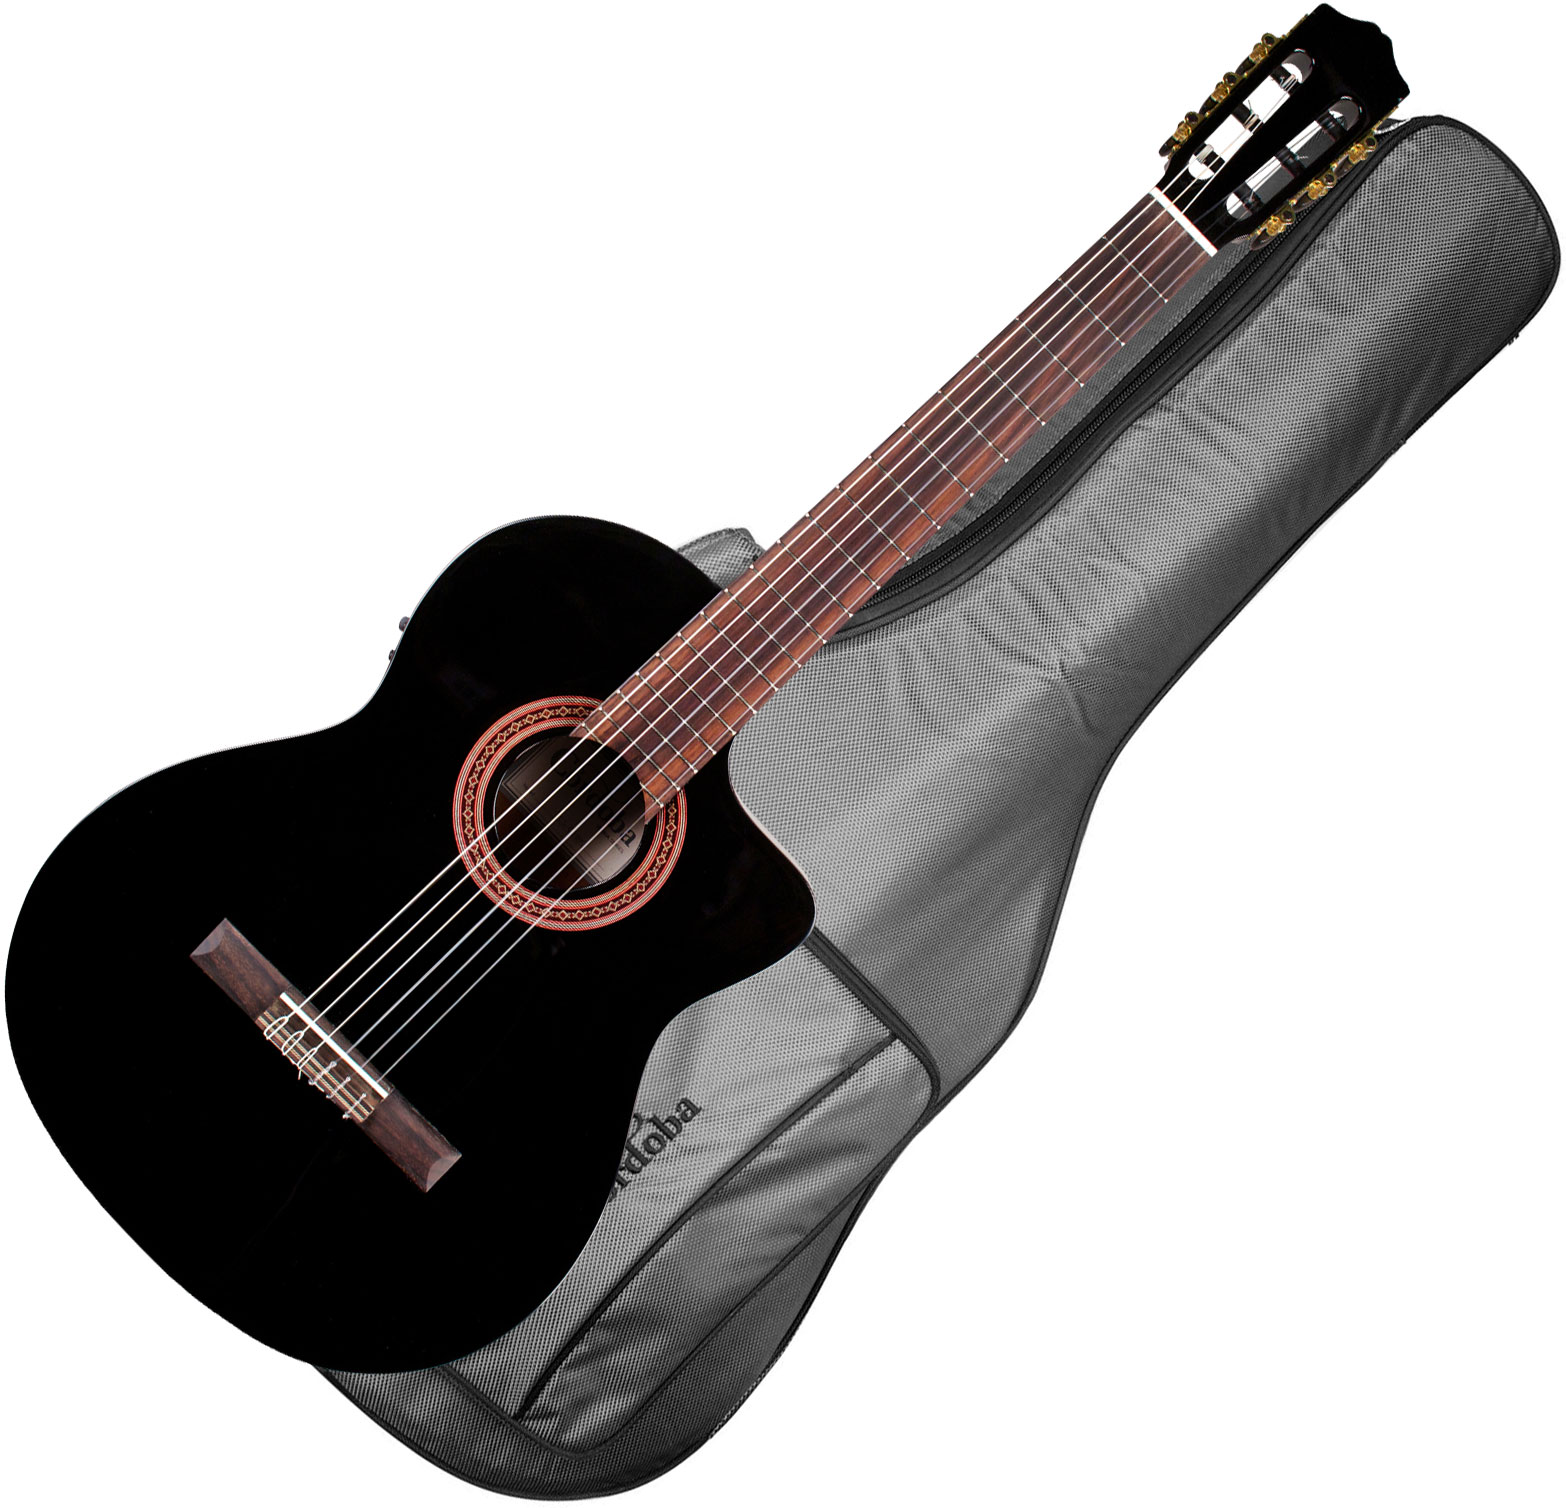 Cordoba C5-ce Iberia Cw Cedre Acajou Rw +housse - Black - Classical guitar 4/4 size - Variation 1